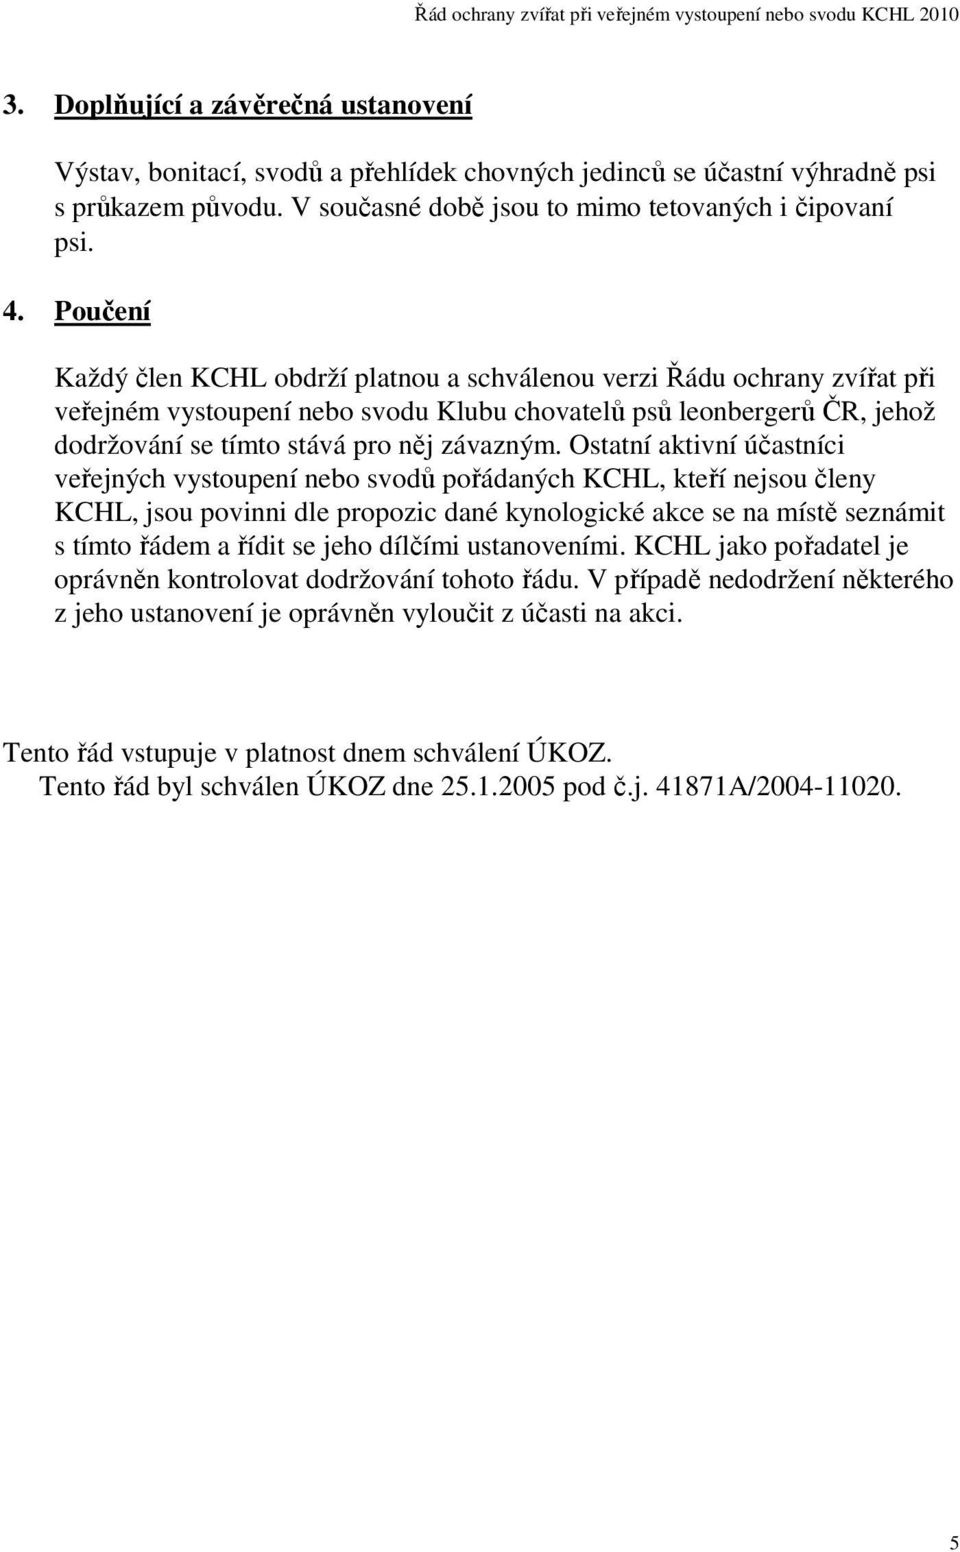 Ostatní aktivní účastníci veřejných vystoupení nebo svodů pořádaných KCHL, kteří nejsou členy KCHL, jsou povinni dle propozic dané kynologické akce se na místě seznámit s tímto řádem a řídit se jeho